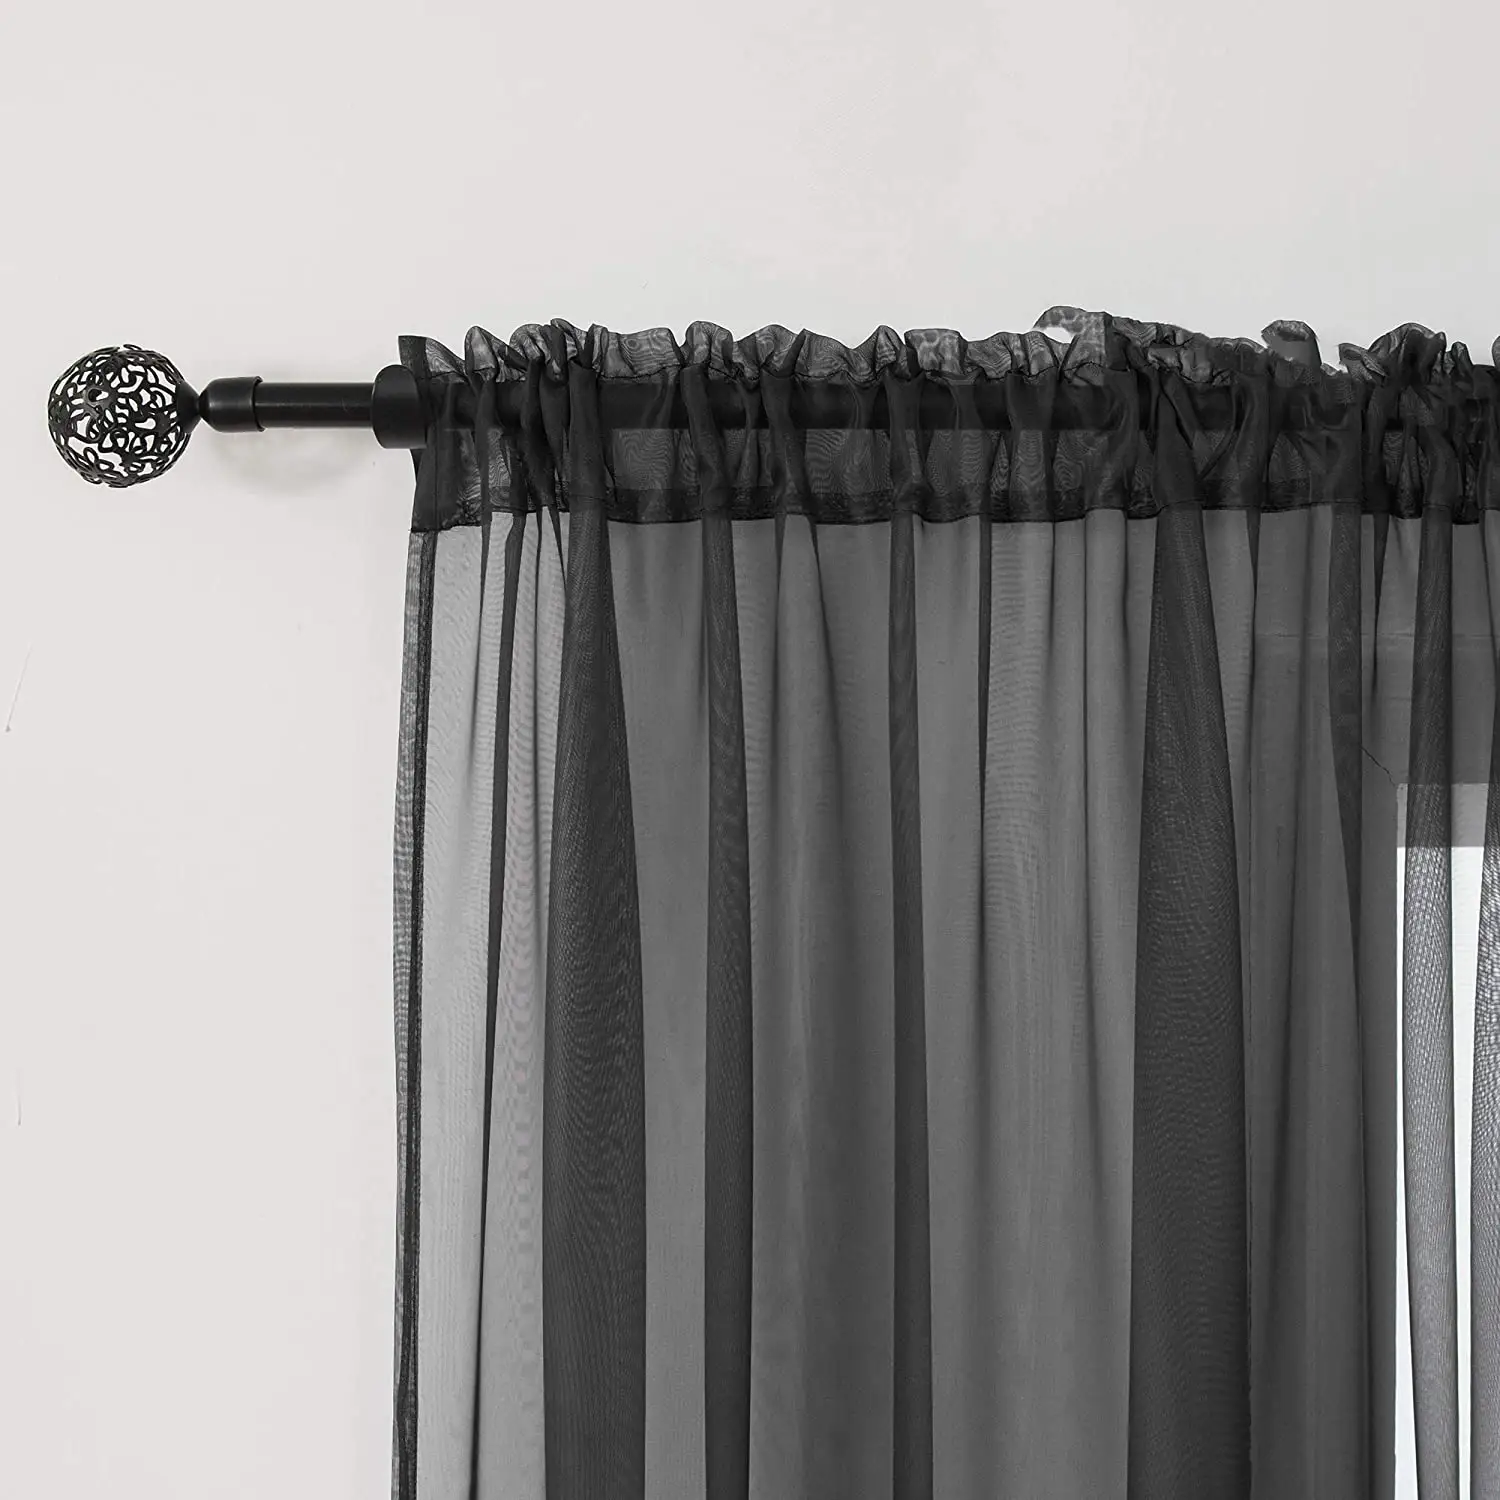 Siyah şeffaf vual perdeler perdeler çubuk cep lambası filtreleme perdeler perdeler panelleri yatak odası oturma odası bölüm zemin